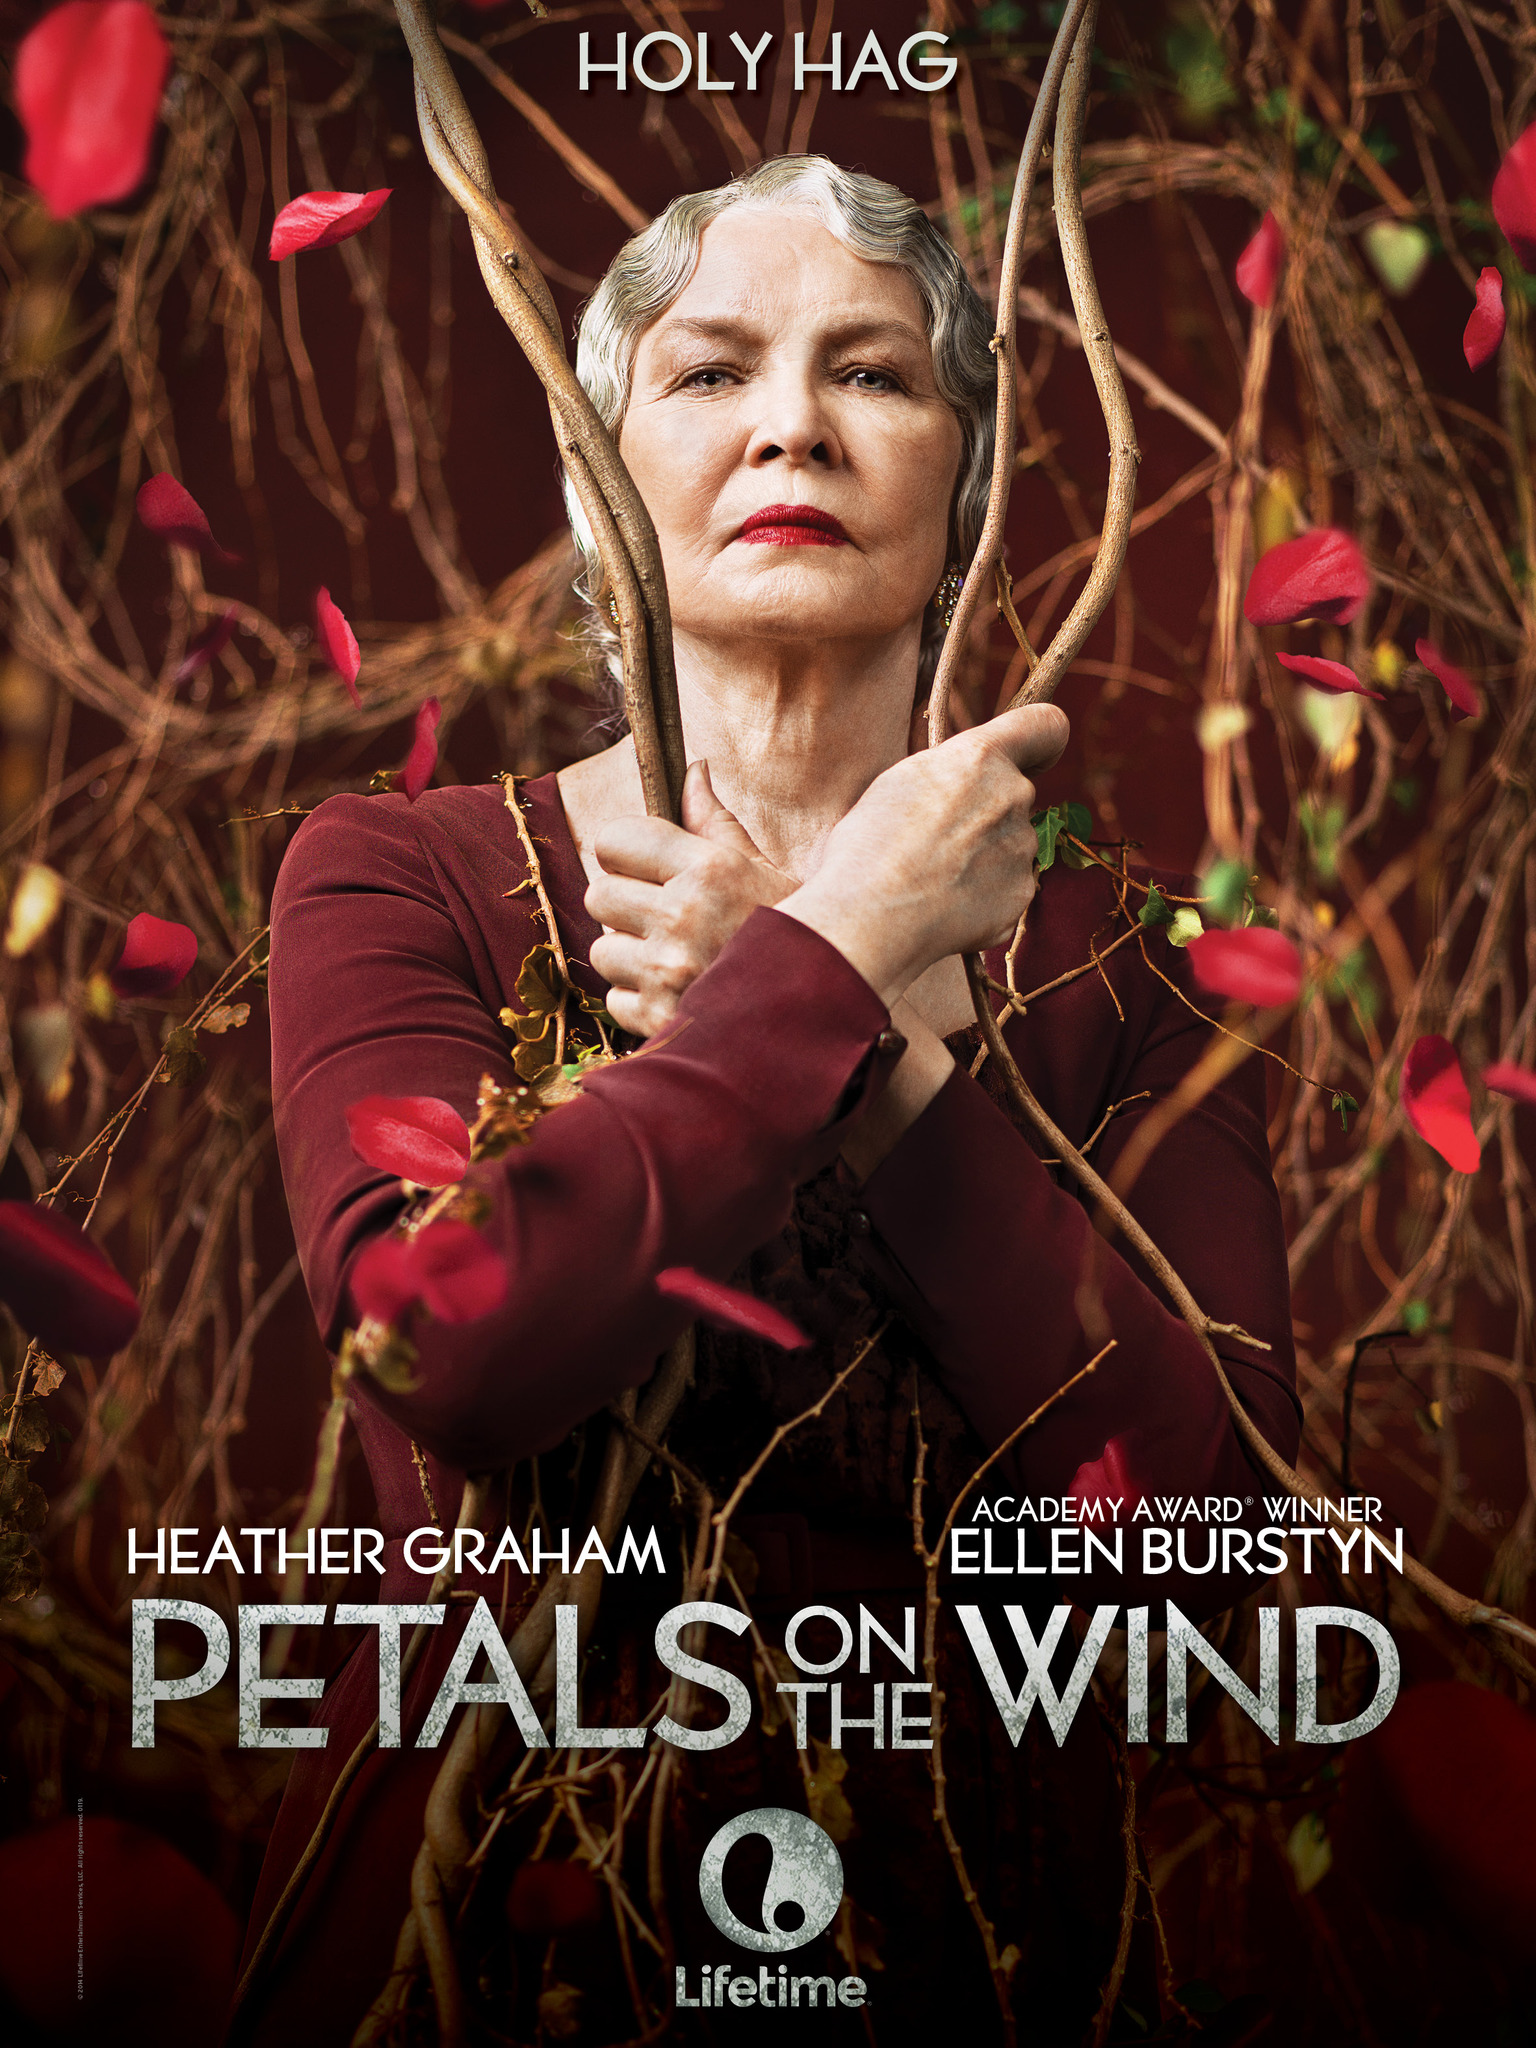 ดูหนังออนไลน์HD Petals on the Wind (2014) เพทัล ออน เดอะ วินด์ หนังเต็มเรื่อง หนังมาสเตอร์ ดูหนังHD ดูหนังออนไลน์ ดูหนังใหม่